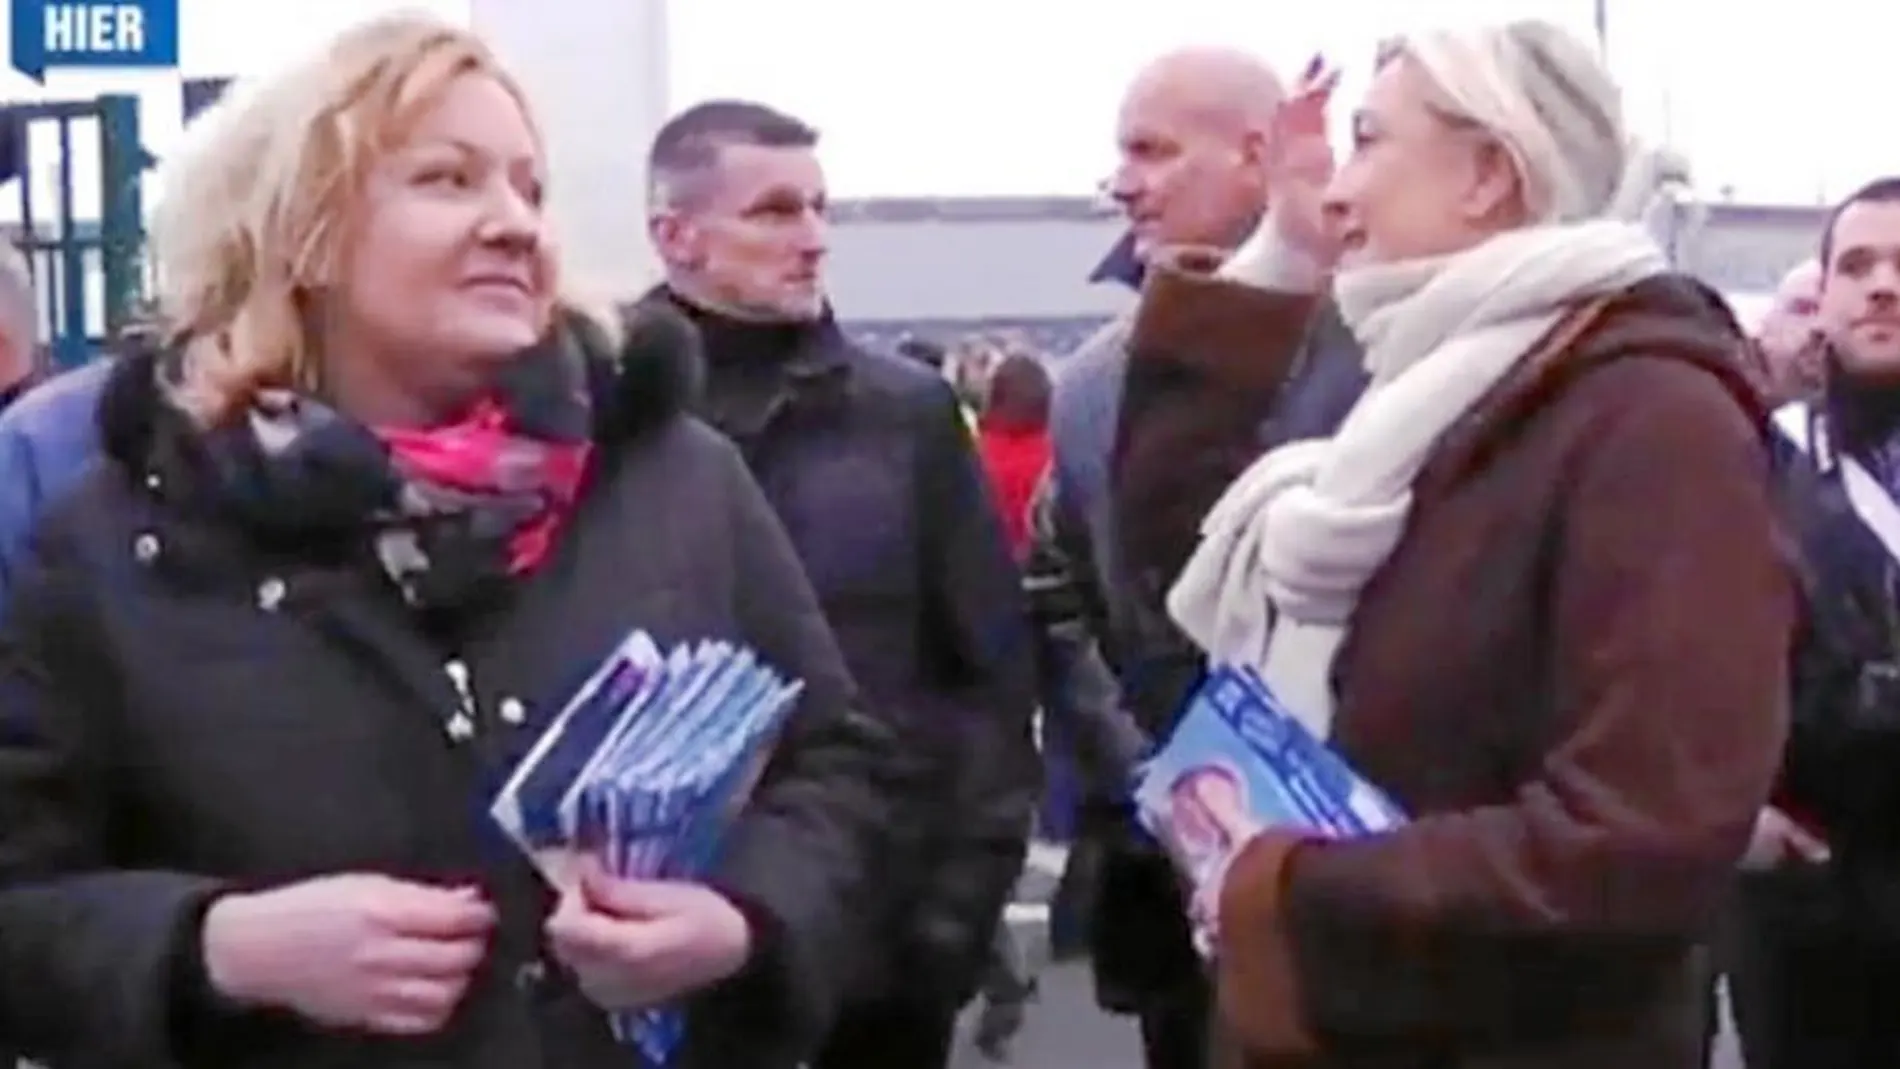 La candidata Sophie Montel y Marine Le Pen hacen campaña en Doubs antes de las elecciones